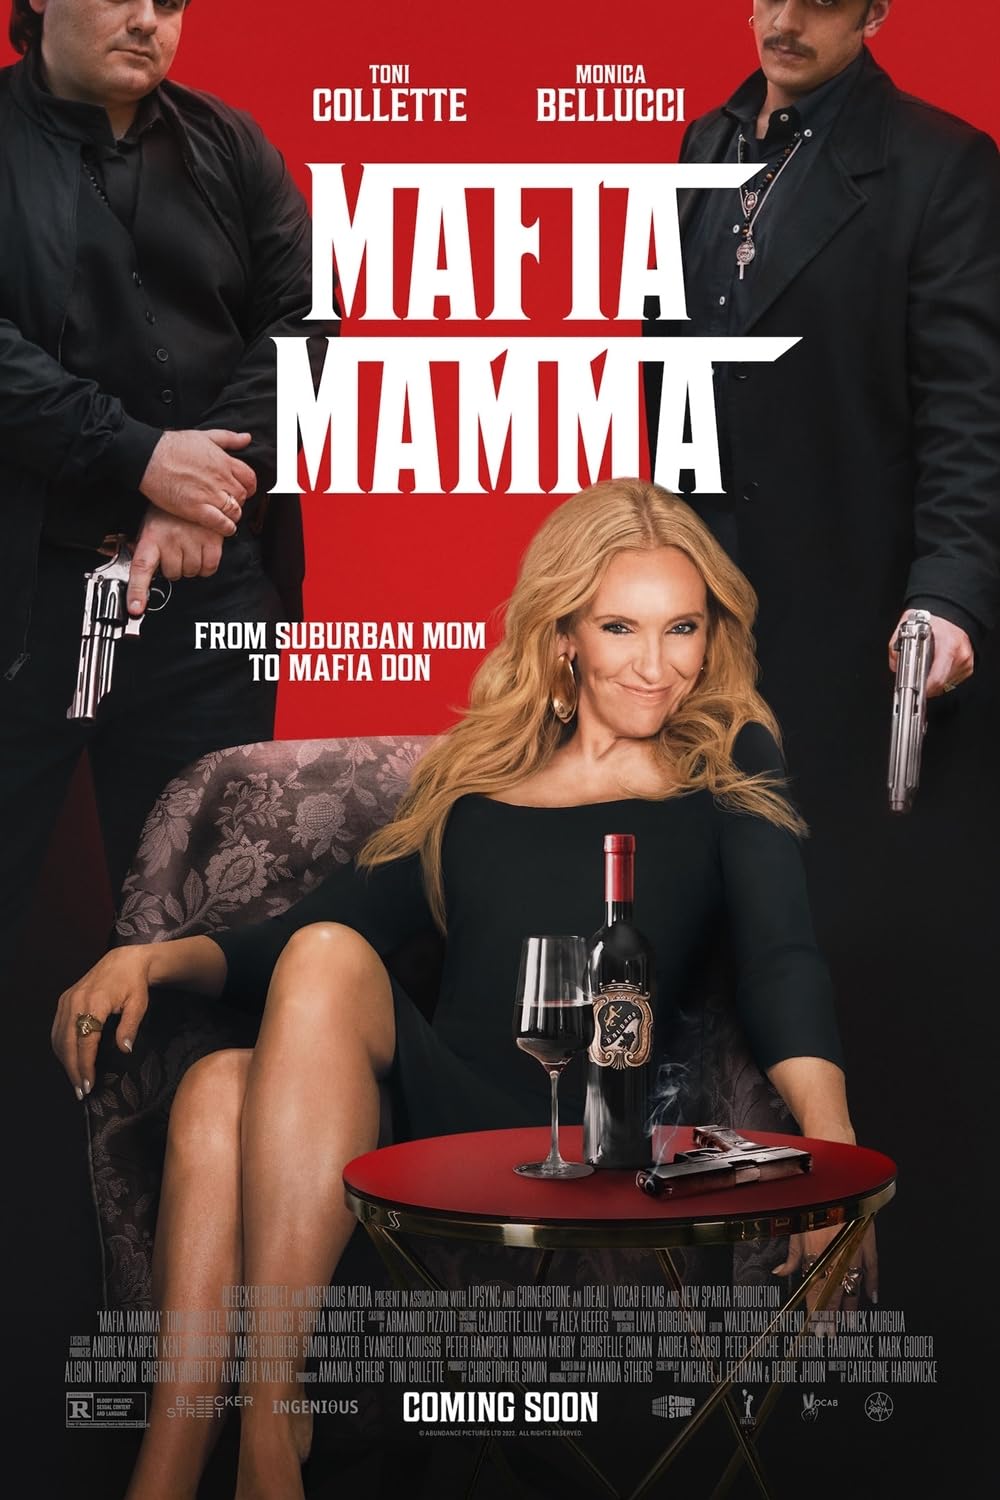 Cover Art for "Mafia Mamma"